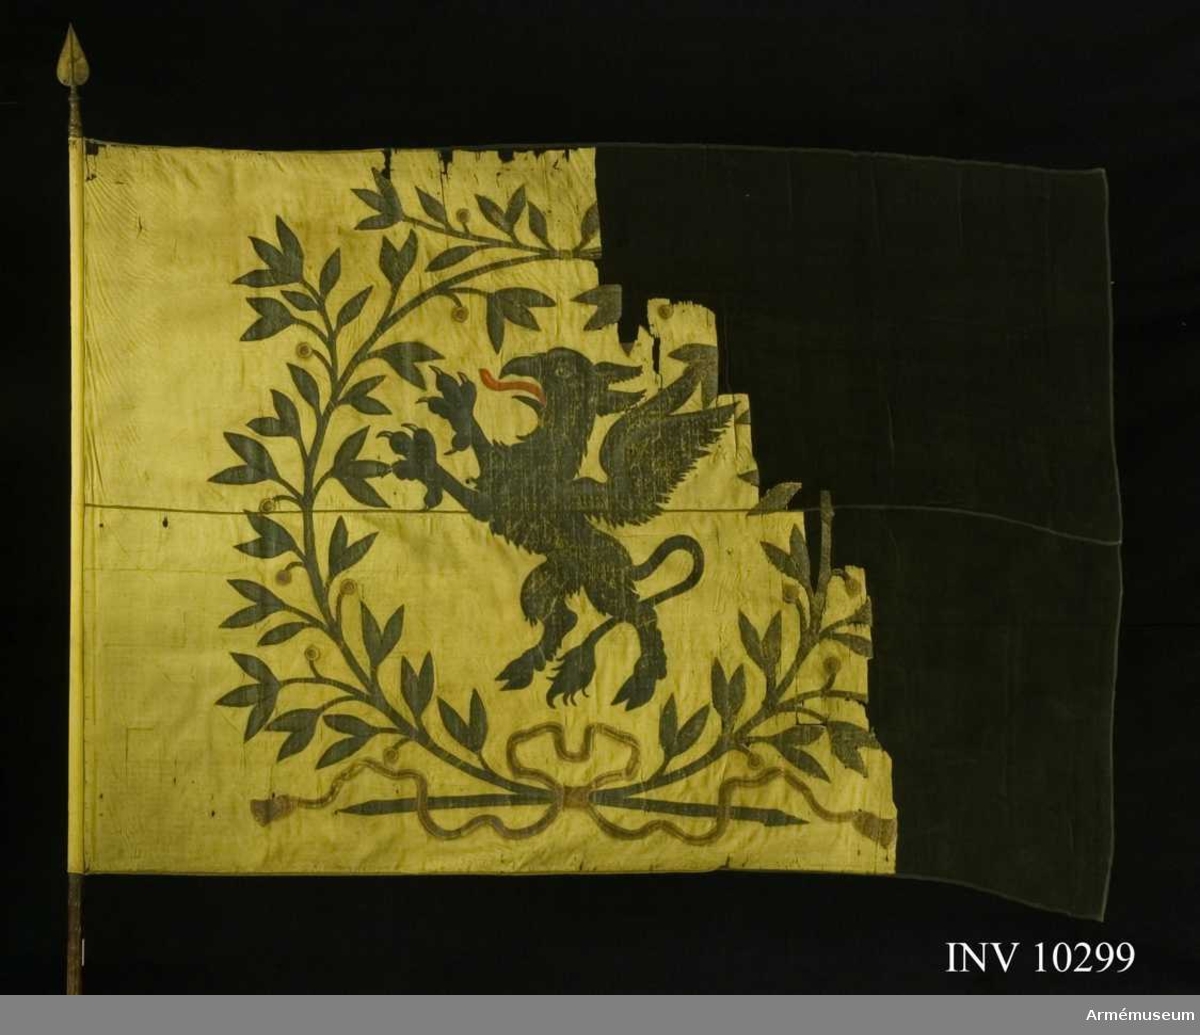 Grupp B I.
Fanduk av gul taft med målade emblem: Södermanlands sköldemärke en svart grip med röd tunga, omgivet av en krans av tvenne lagerkvistar i svart och grönt med bär i guld och rött, nedtill hopknutna med bandrosett i guld och rött. Fastspikad med gult sidenband och kupiga mässingsstift. Tillverkad 1730 av Johan Wijkman. Stång av furu, brun. Spets av förgylld mässing, holken med profilerade vulster. Bladet lansettliknande, förvaras i rullen.Tillstånd: Duken blekt och starkt fragmentarisk, övre och yttre delen saknas. De kvarvarande delarna insydda mellan crepelin.